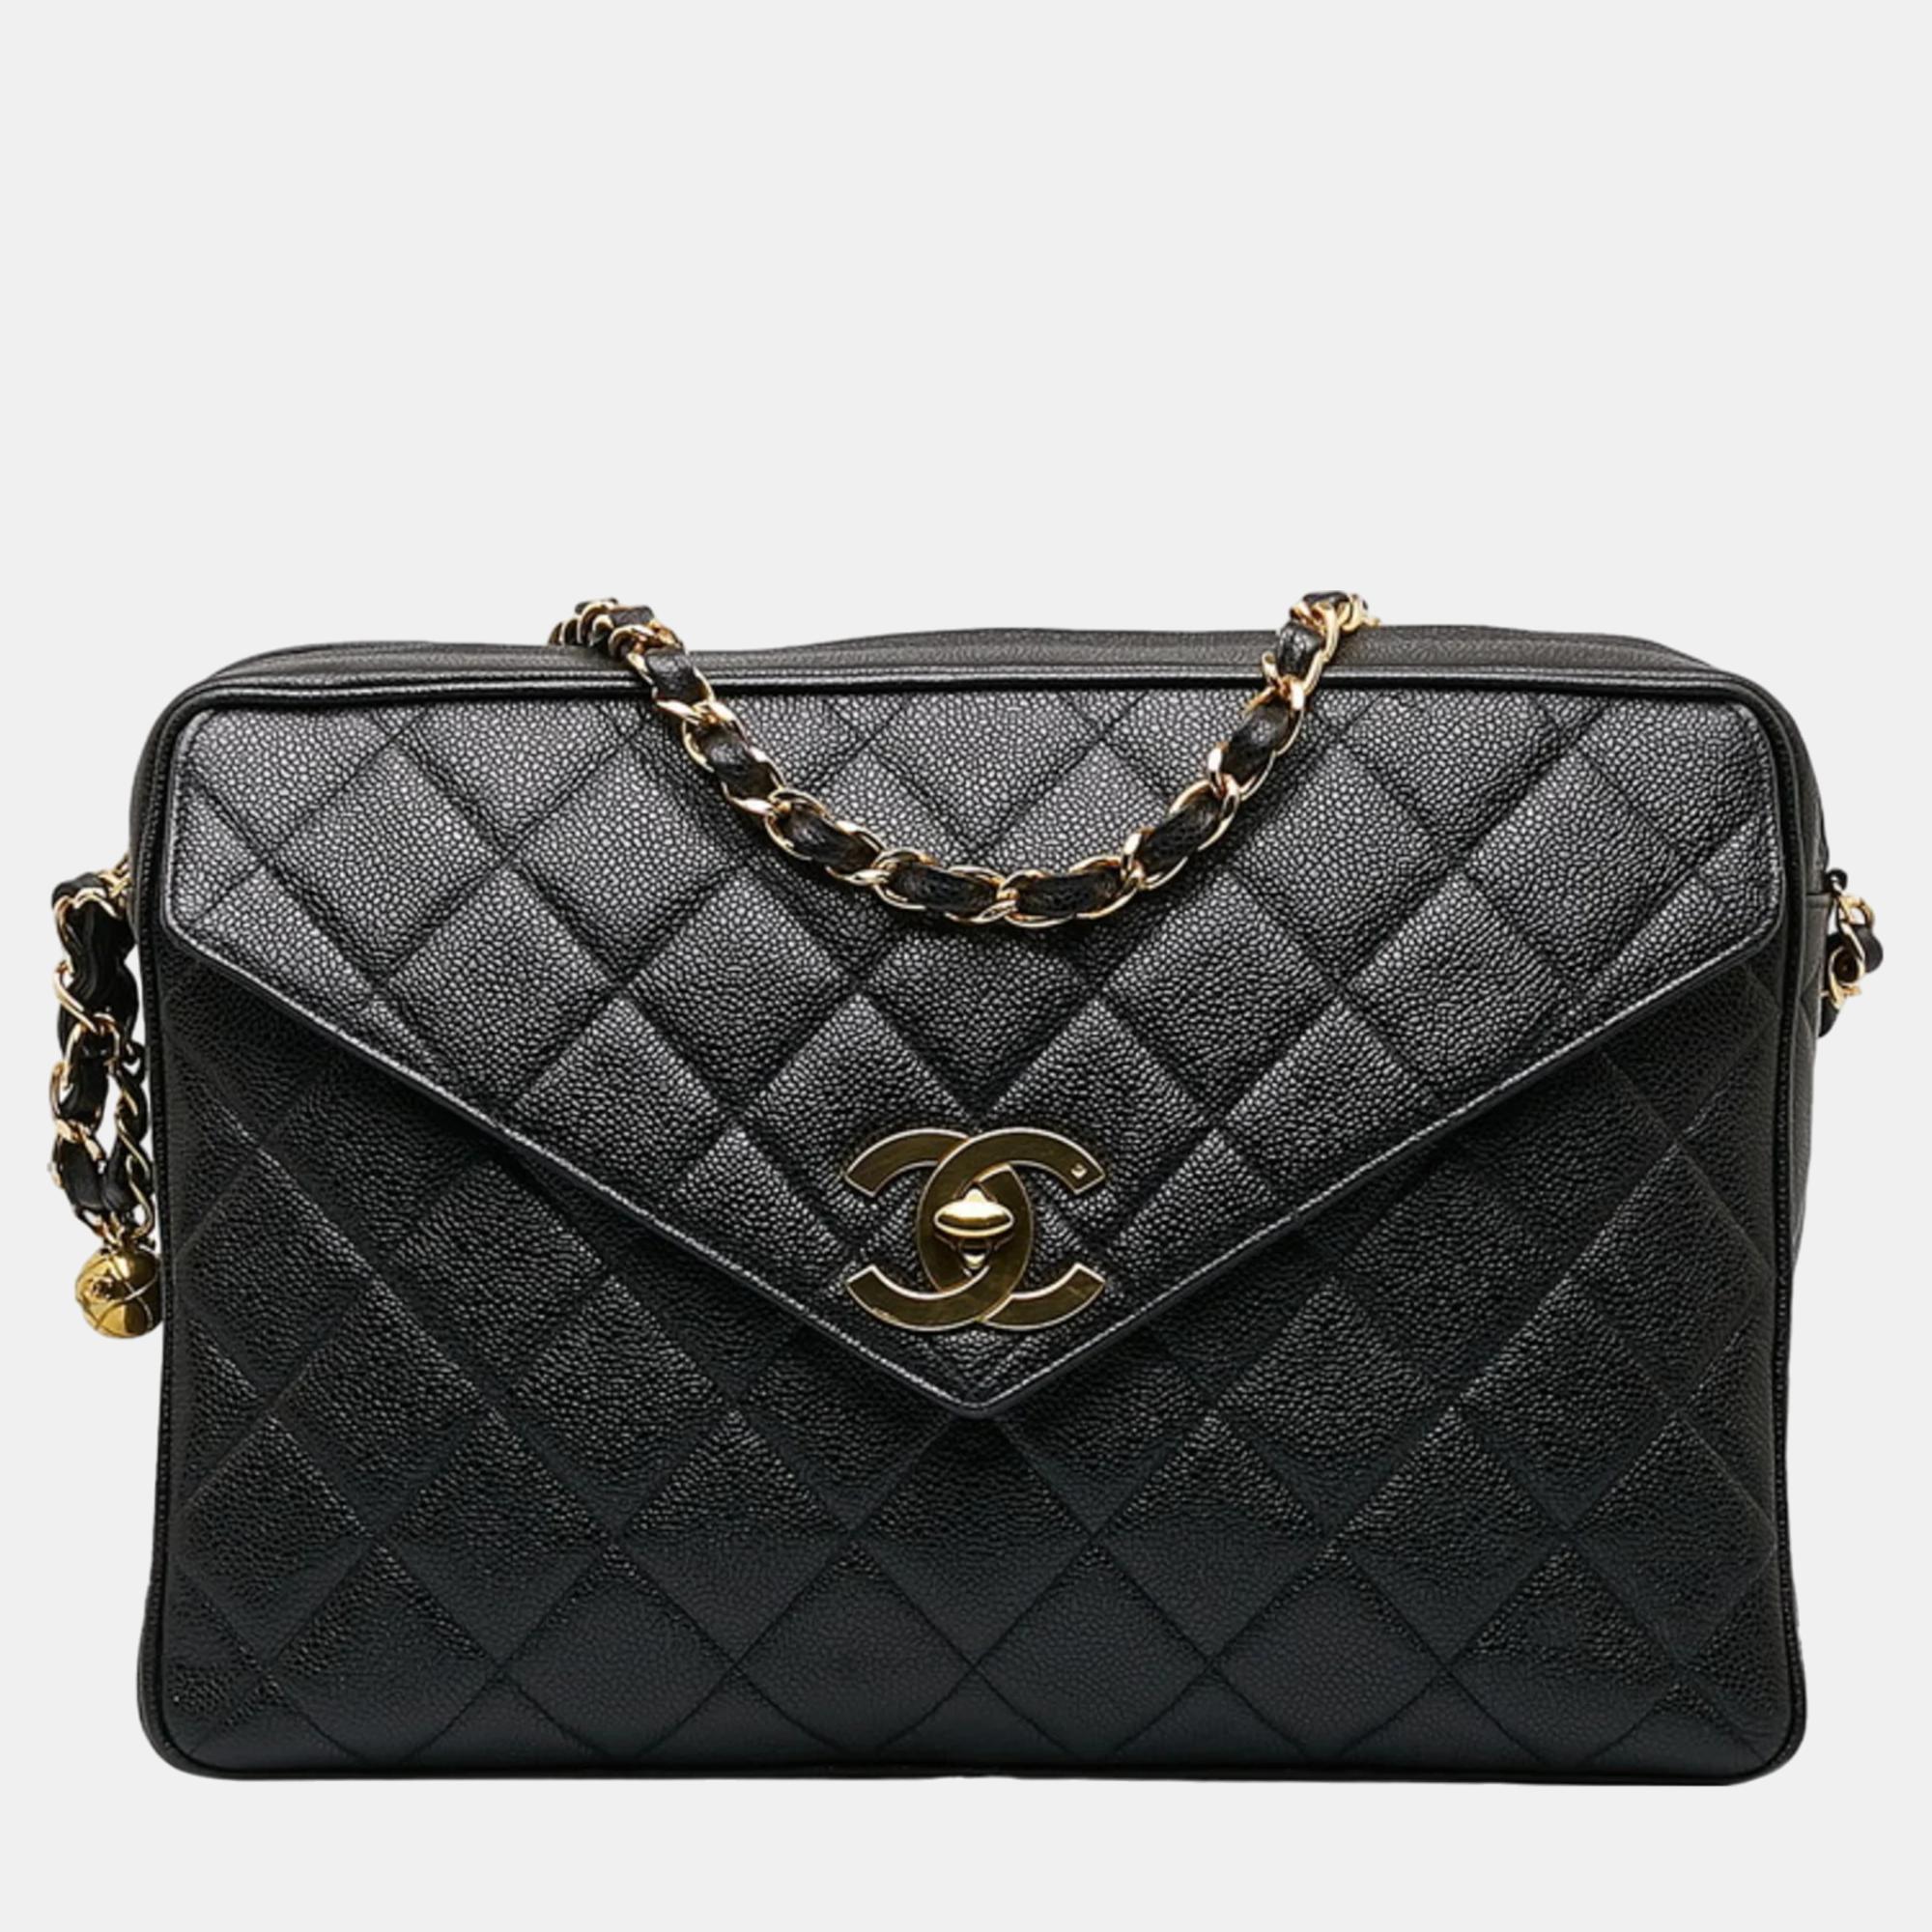 Chanel black quilted caviar xl maxi envelop pocket flap camera bag